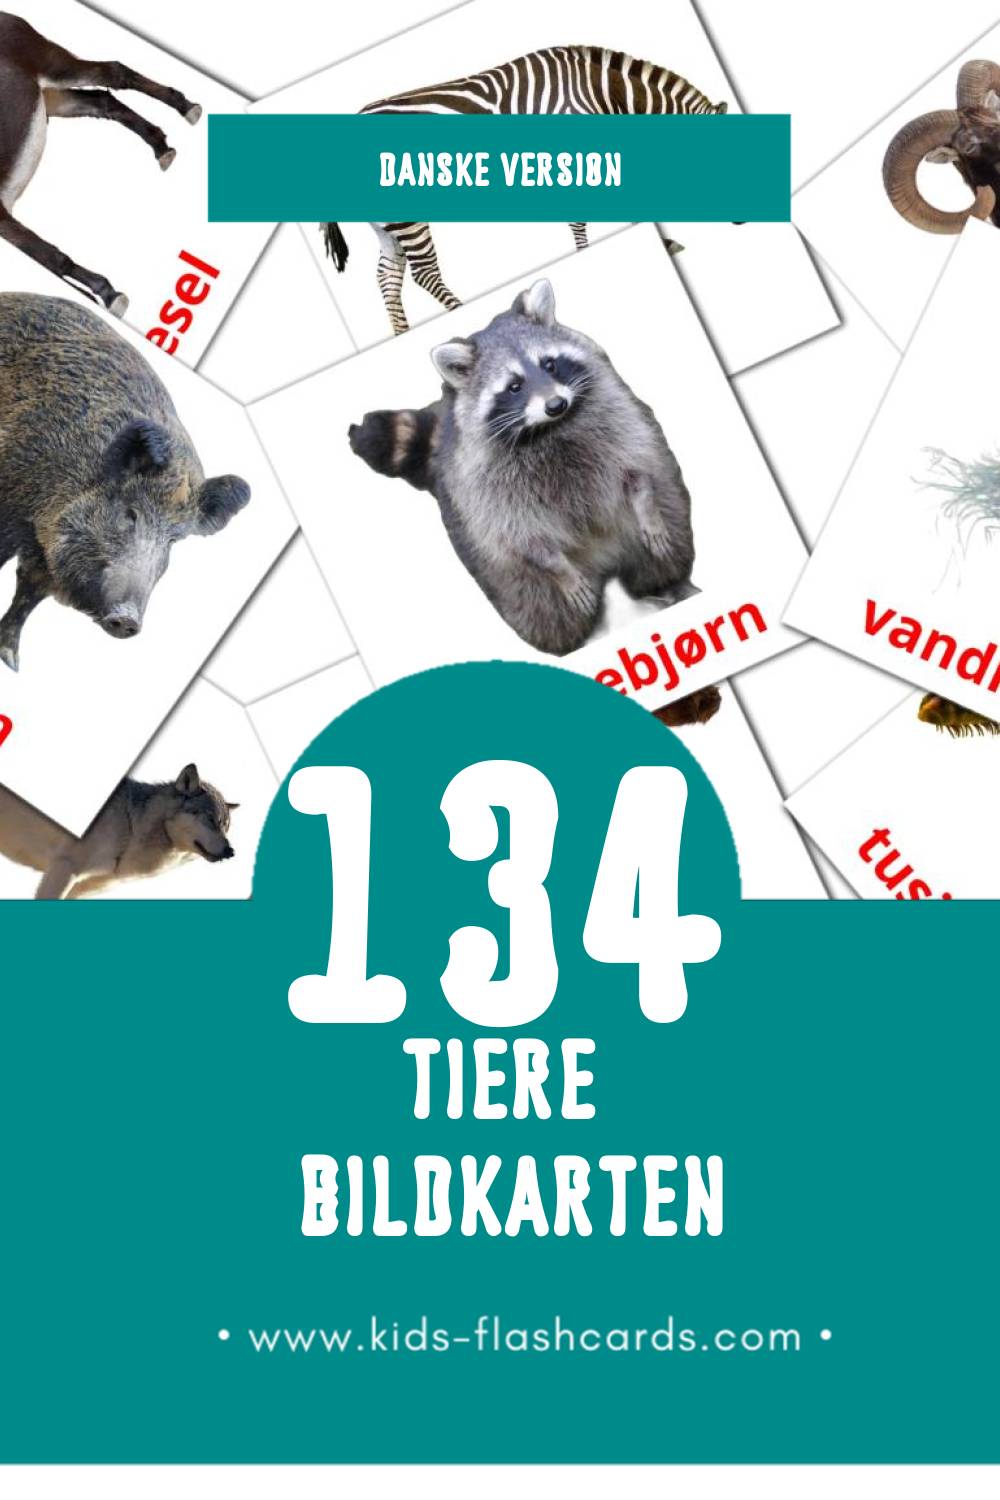 Visual Dyr Flashcards für Kleinkinder (134 Karten in Dansk)